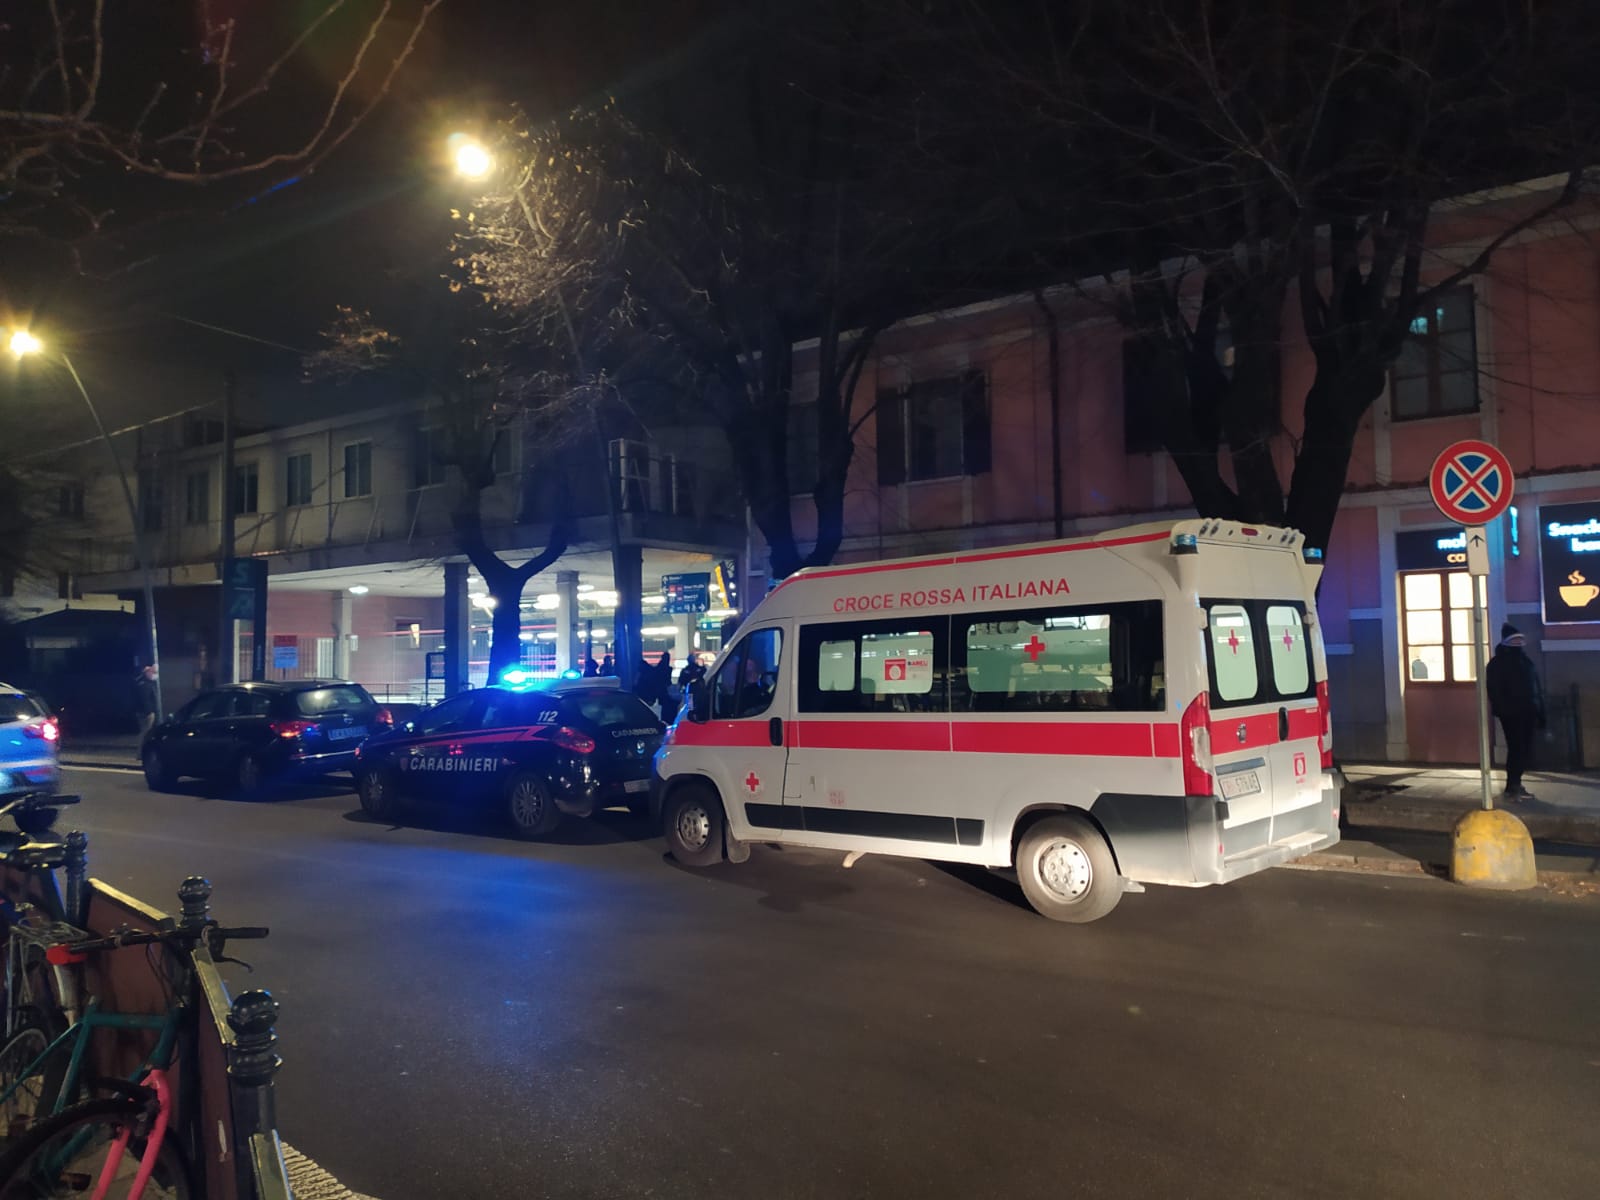 Pomeriggio movimentato davanti a “Saronno centro”: pedone caduto, arriva ambulanza e automedica